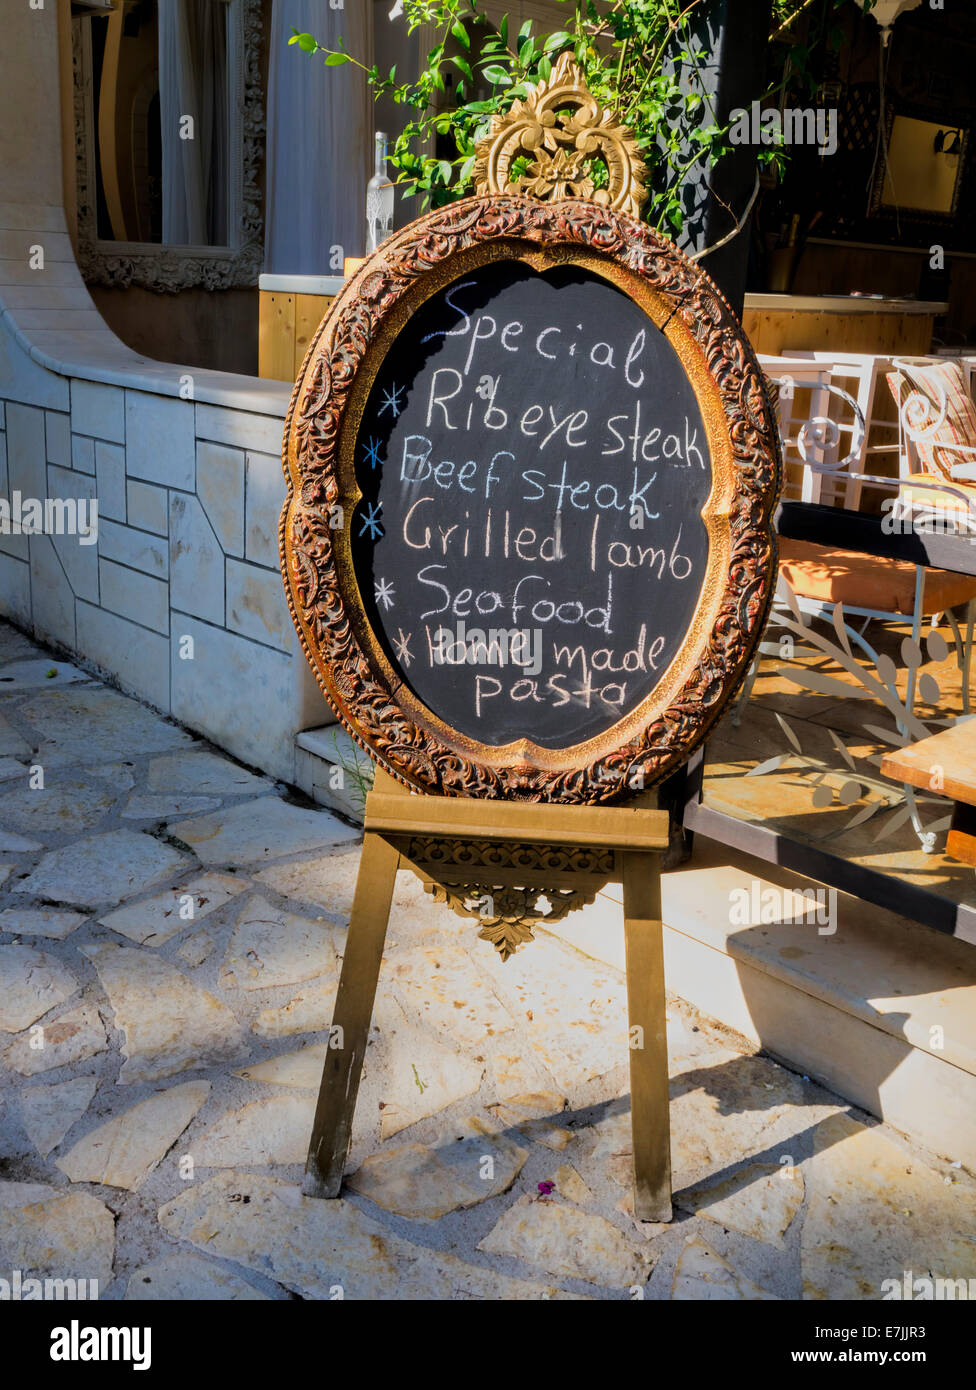 Chalkboard menu outside a restaurant in Greece Stock Photo